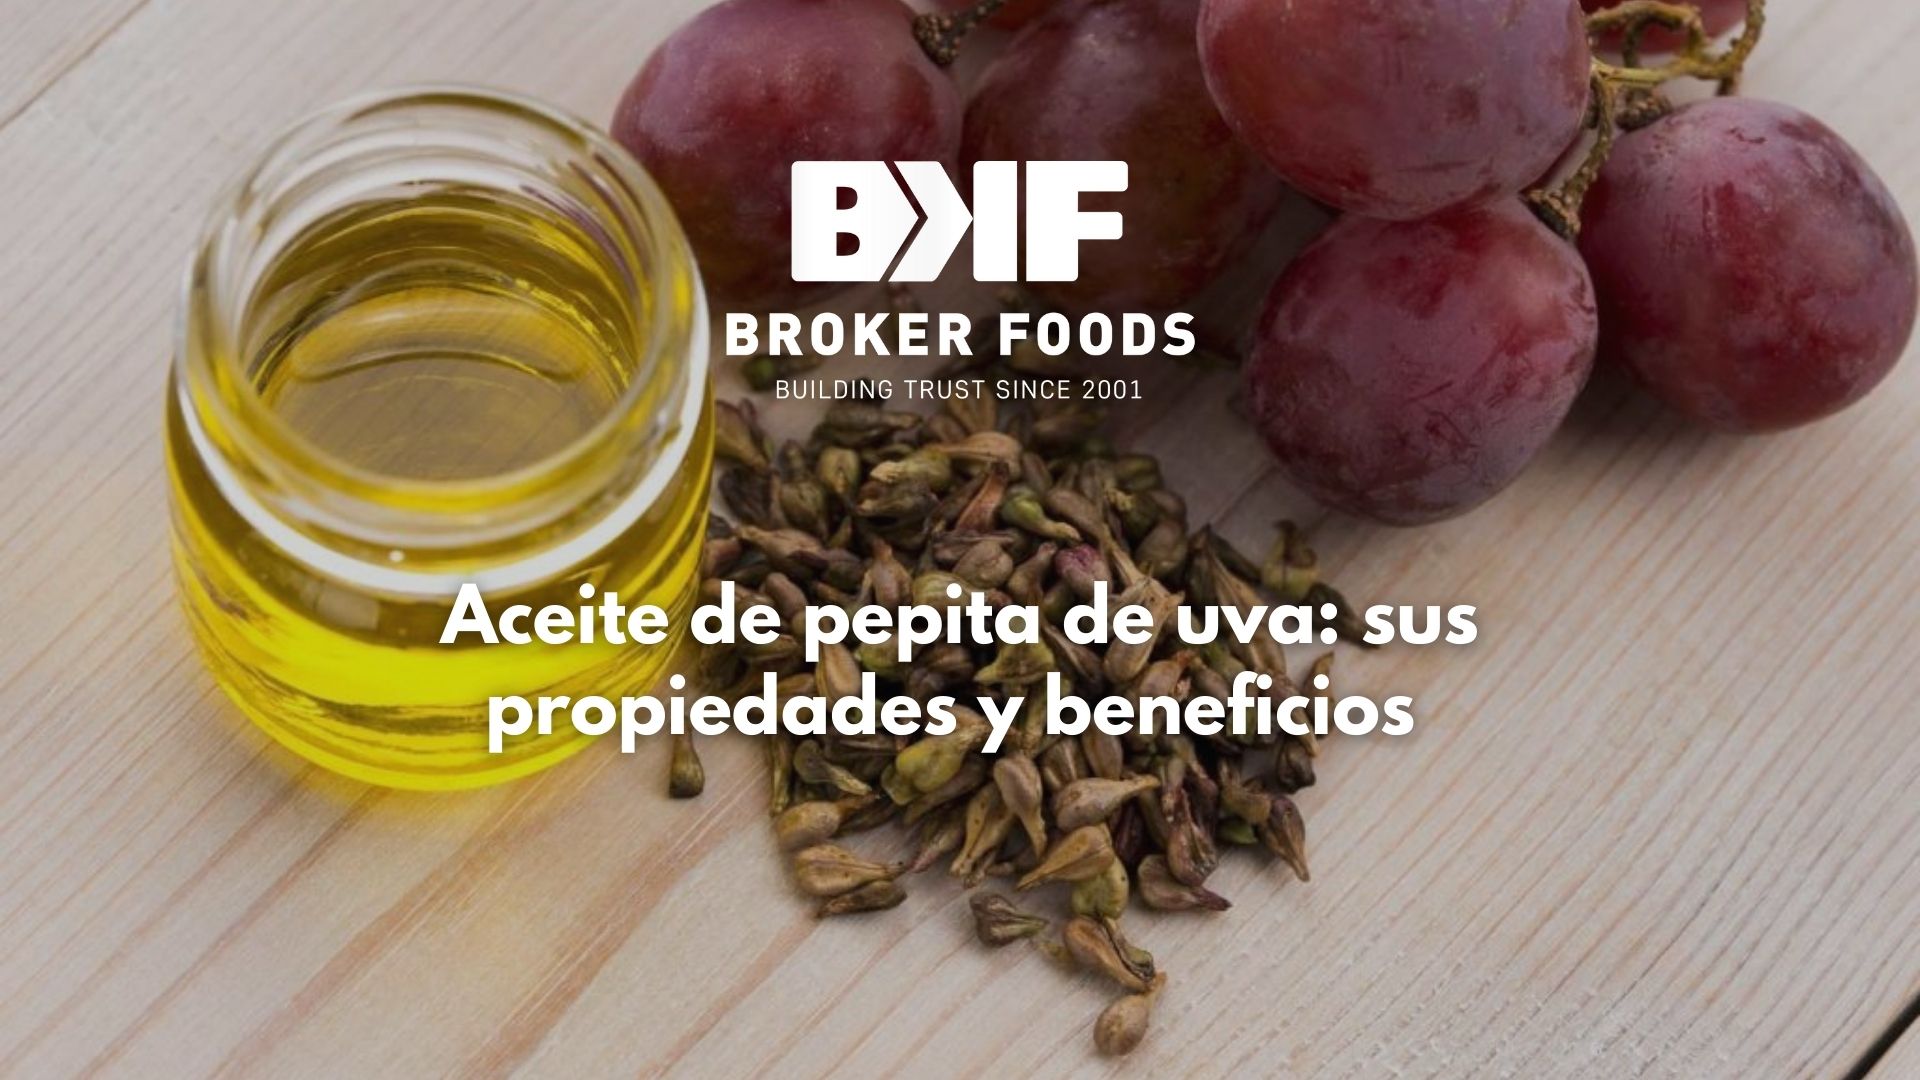 Broker Foods: Aceite de pepita de uva: sus propiedades y beneficios